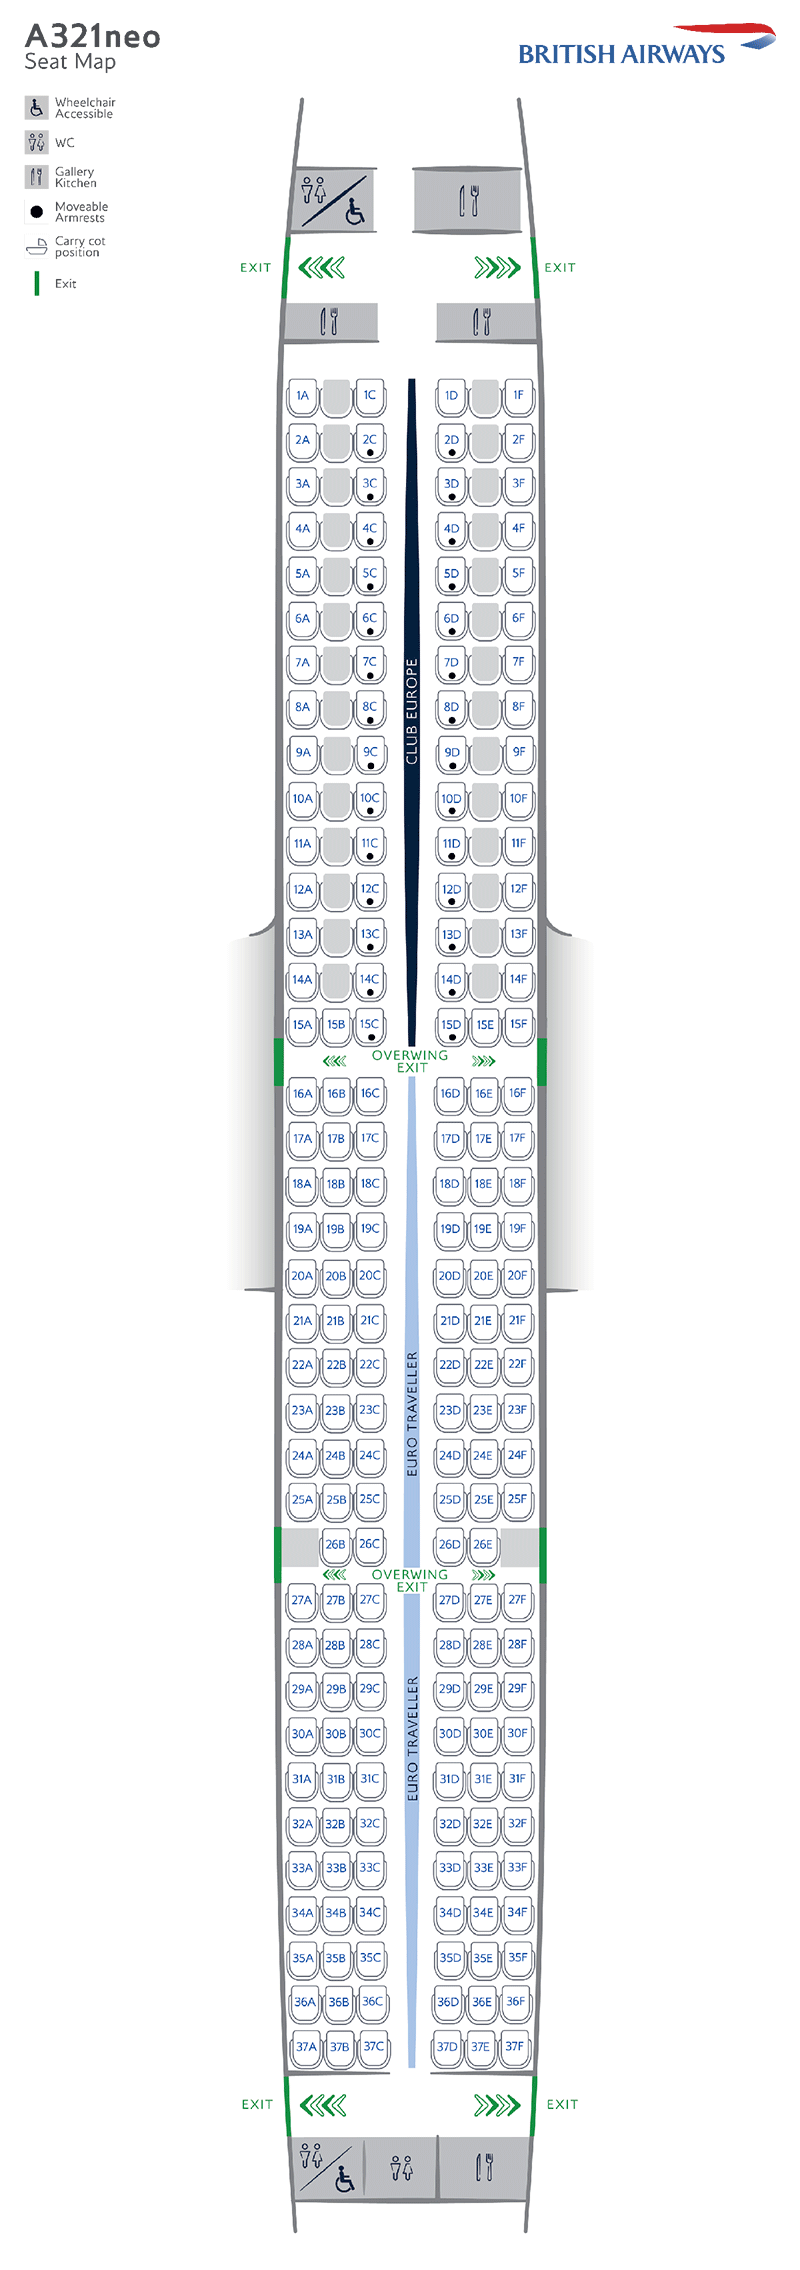 Configurazione dei posti di A321